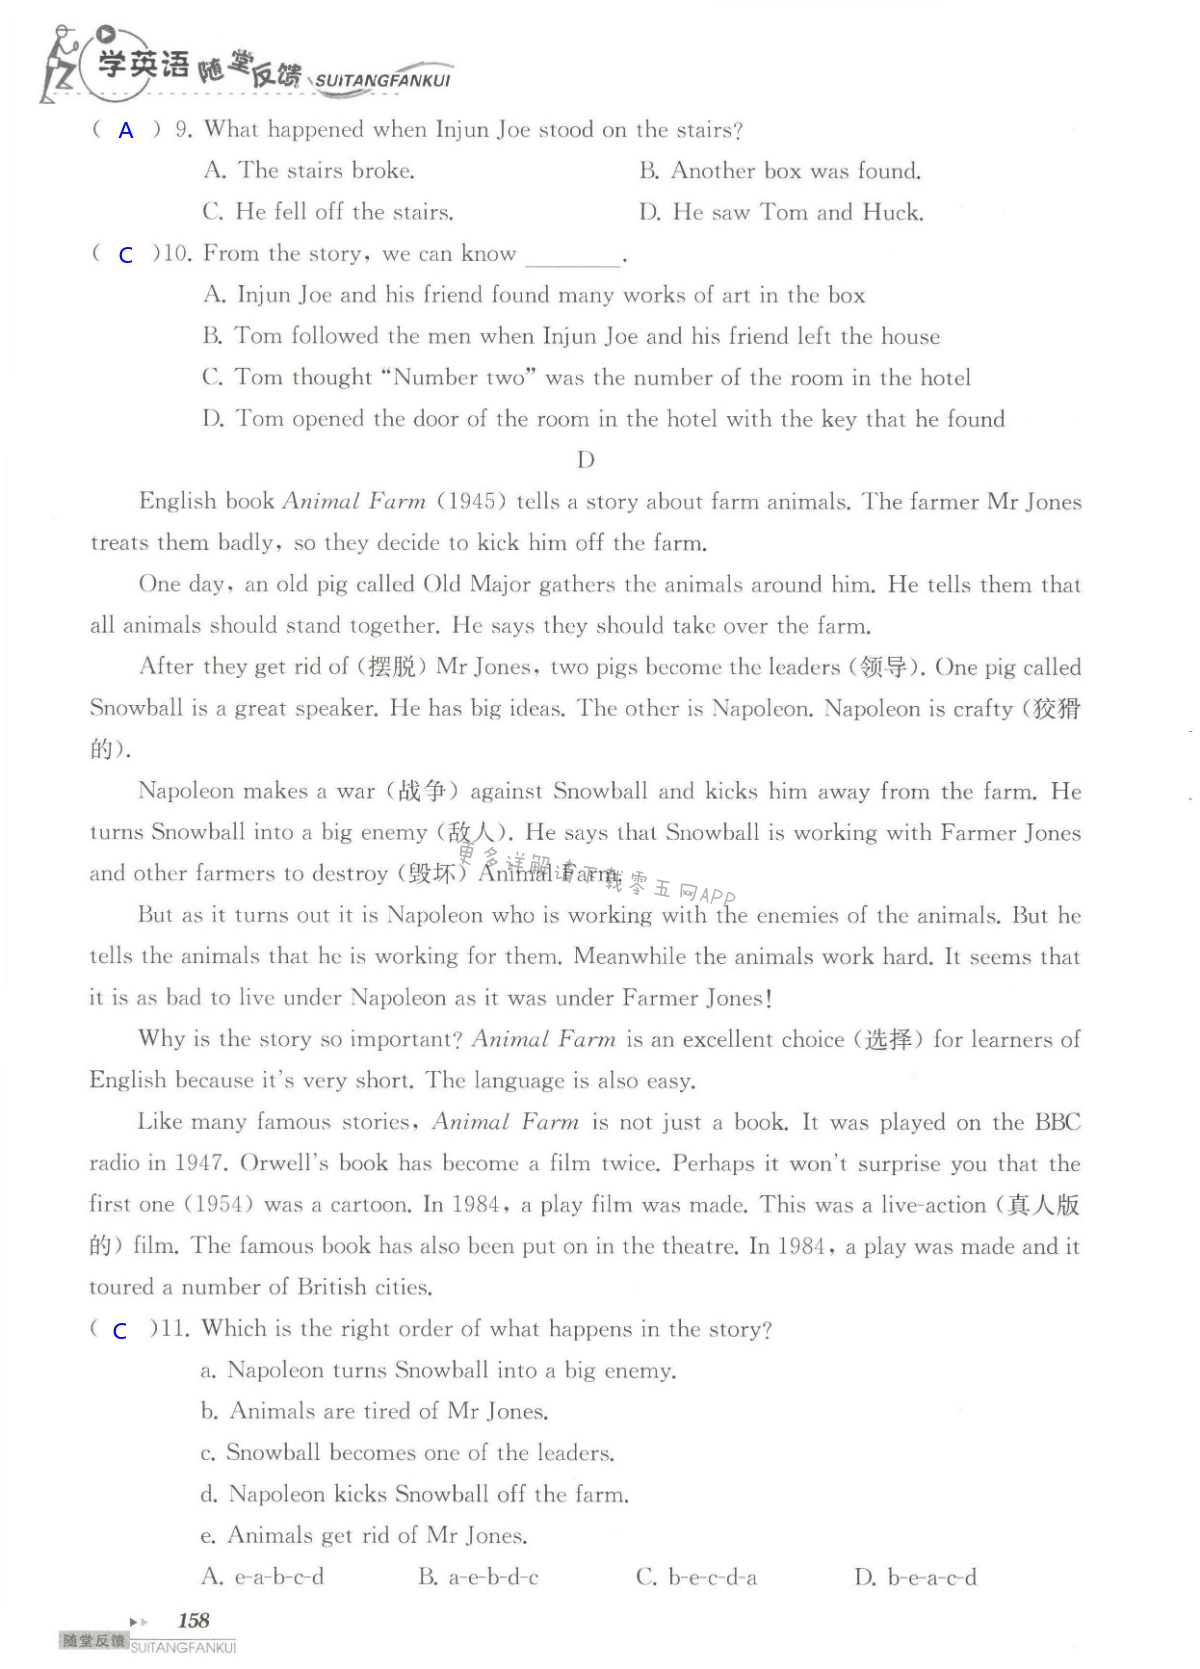 单元综合测试卷  Test for Unit 4 of 8B - 第158页